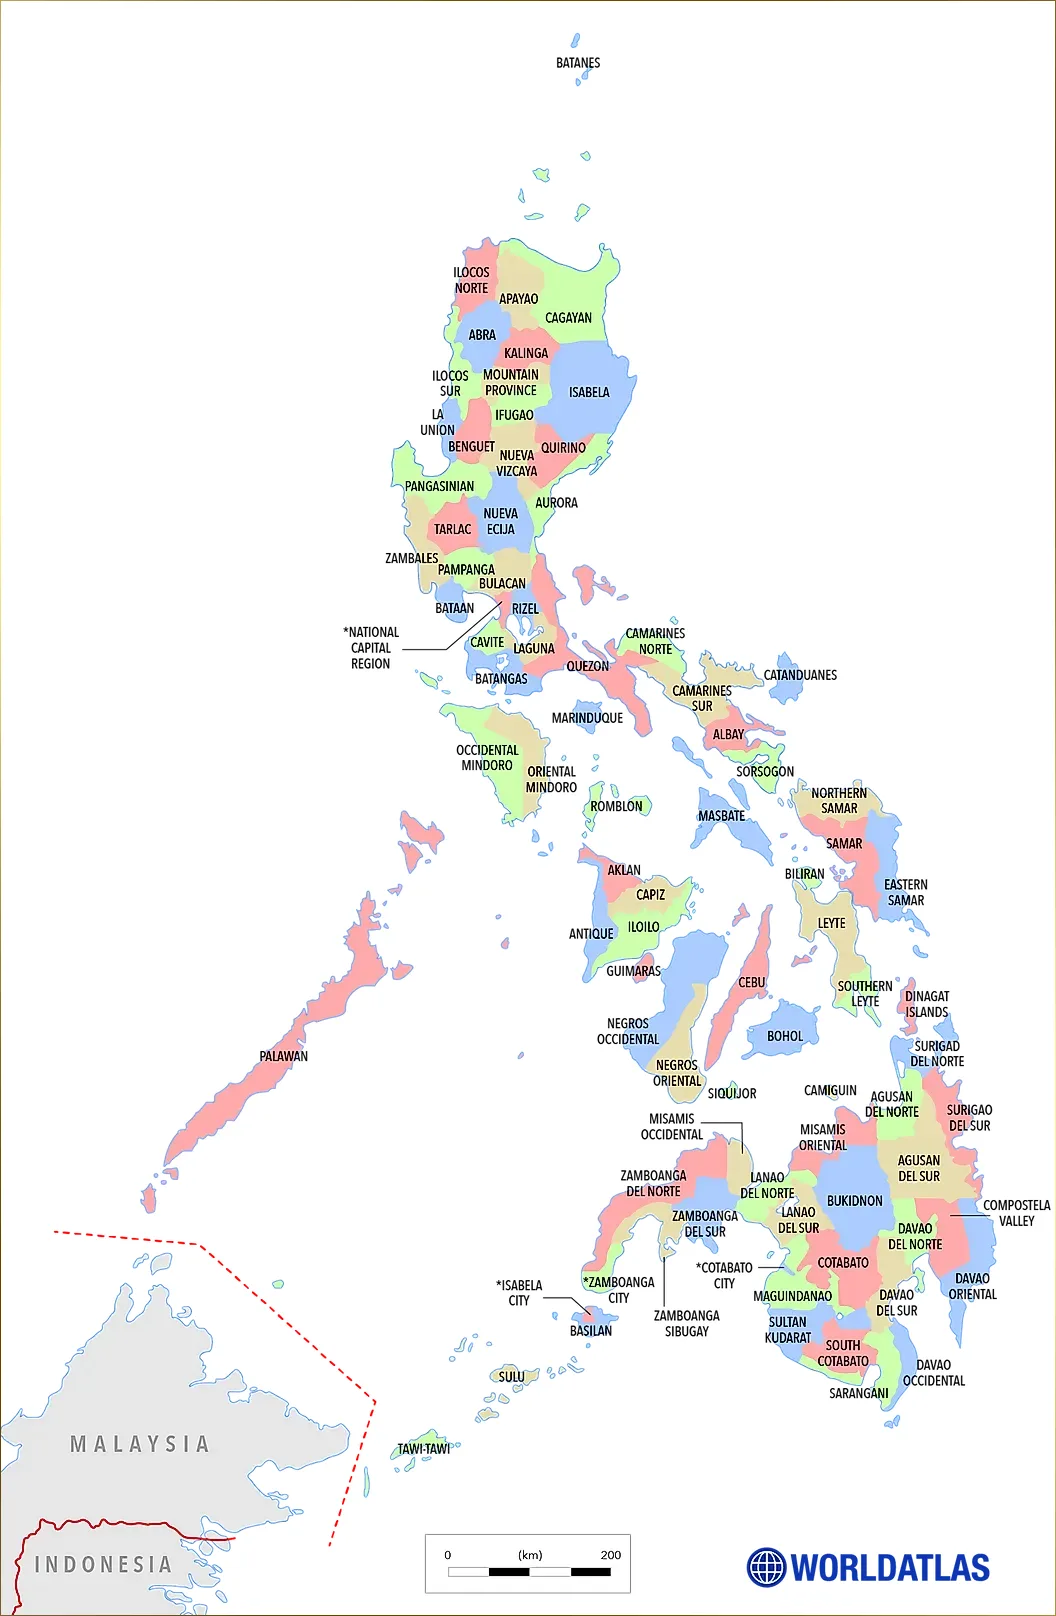 Bản đồ đơn vị hành chính Philippines (Map of administrative units of the Philippines)